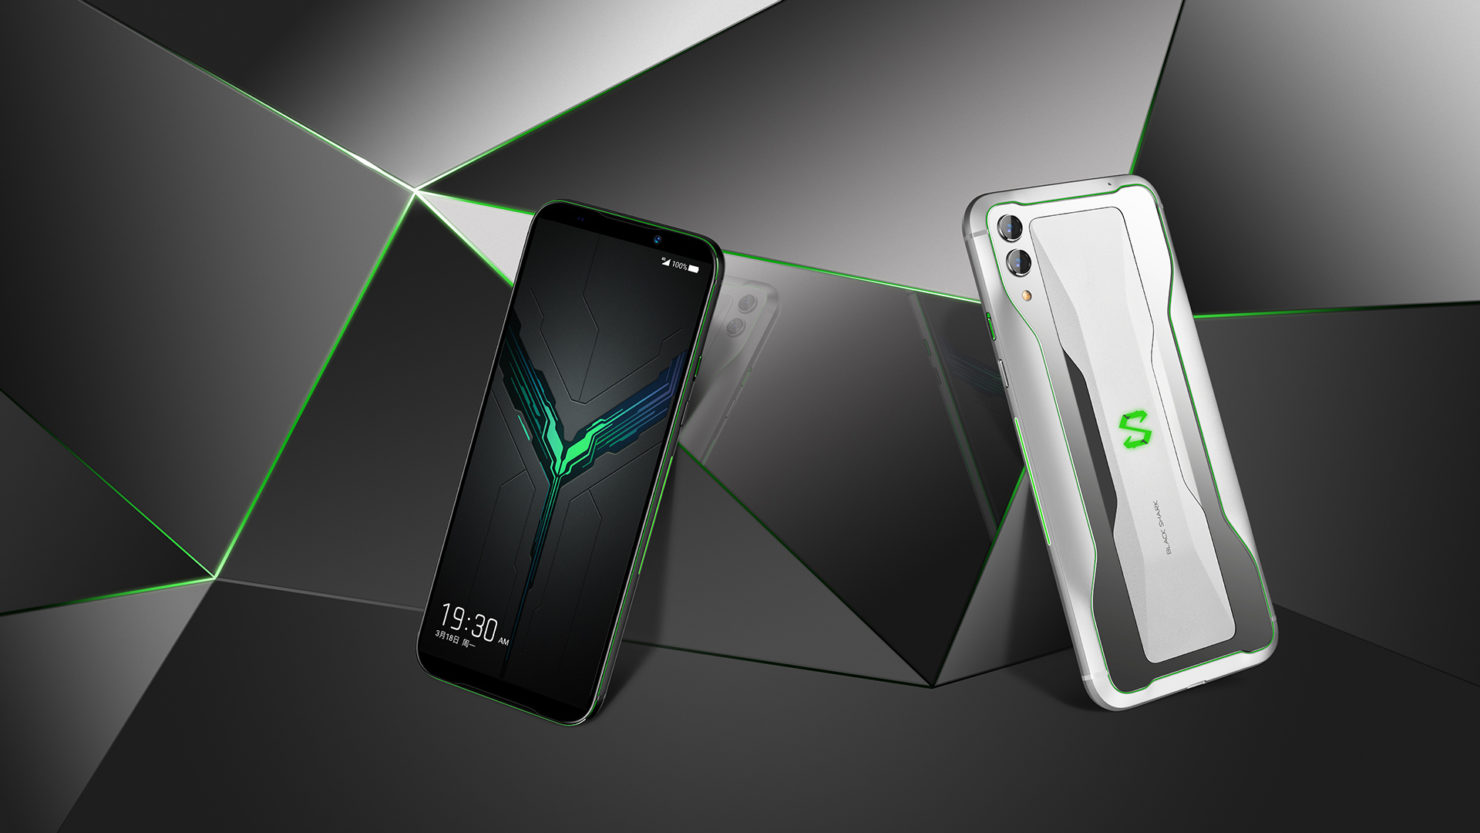 Smartfón Xiaomi Black Shark 2 Pro - výhody a nevýhody